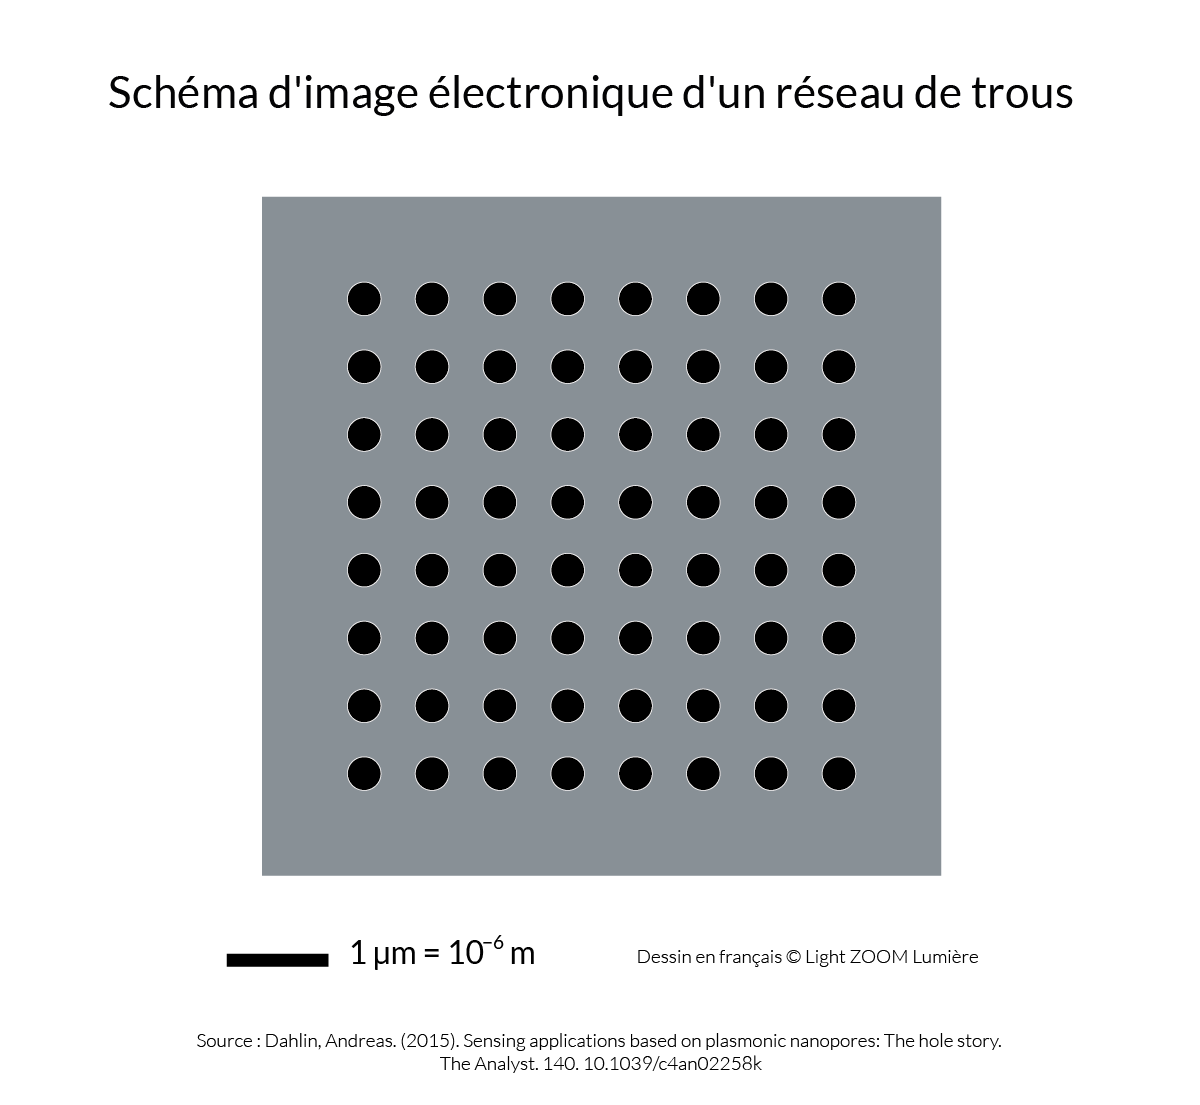 Schéma d'image électronique d'un réseau de trous © Light ZOOM Lumière